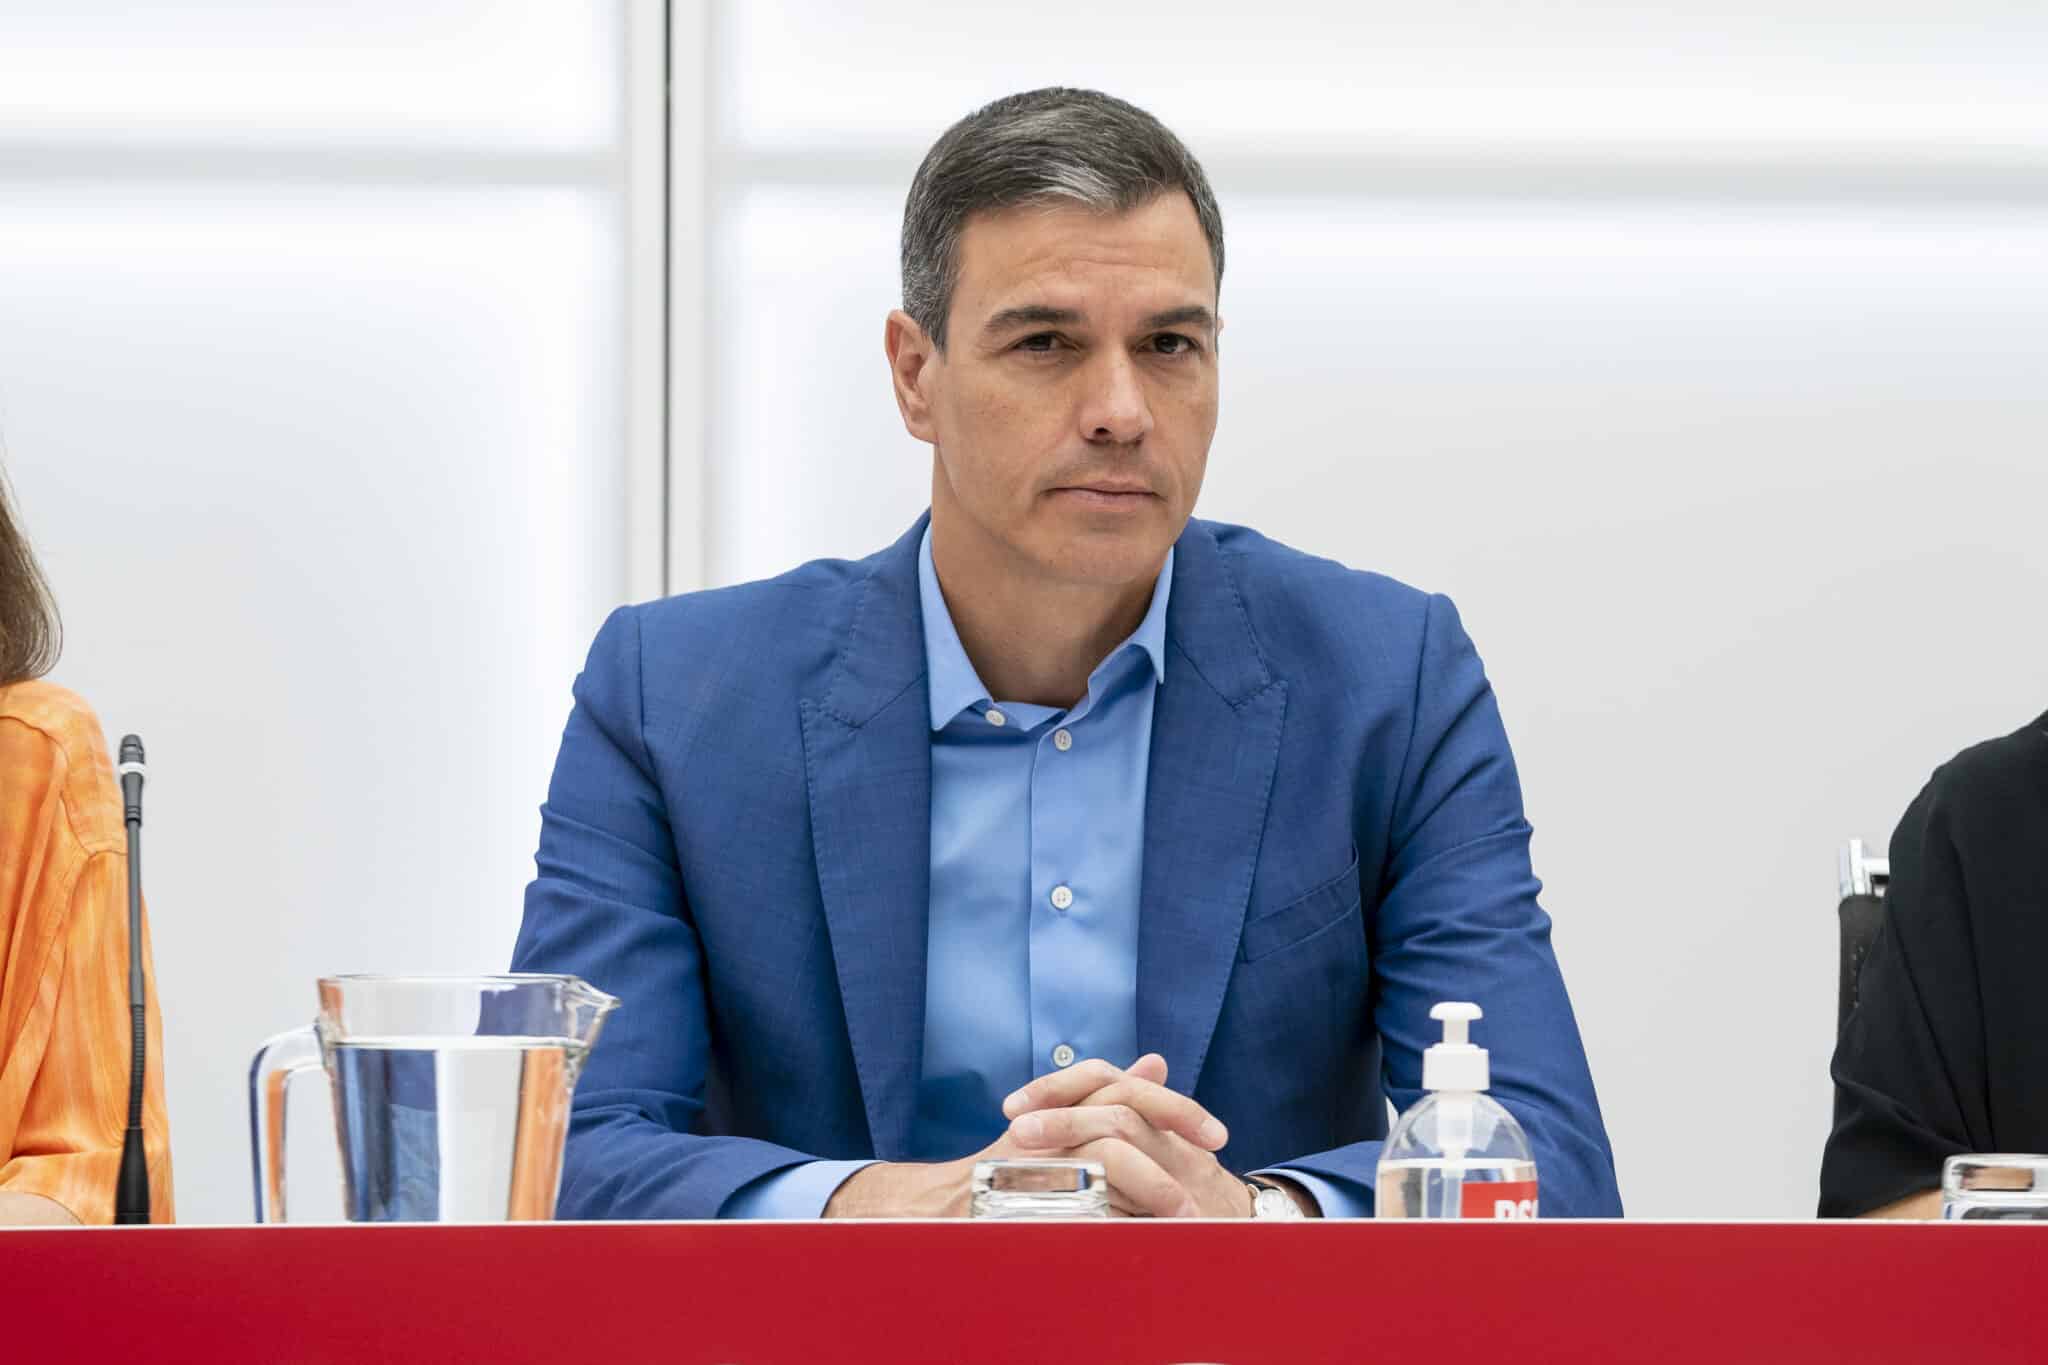 Pedro Sánchez preside la Ejecutiva Federal del PSOE.